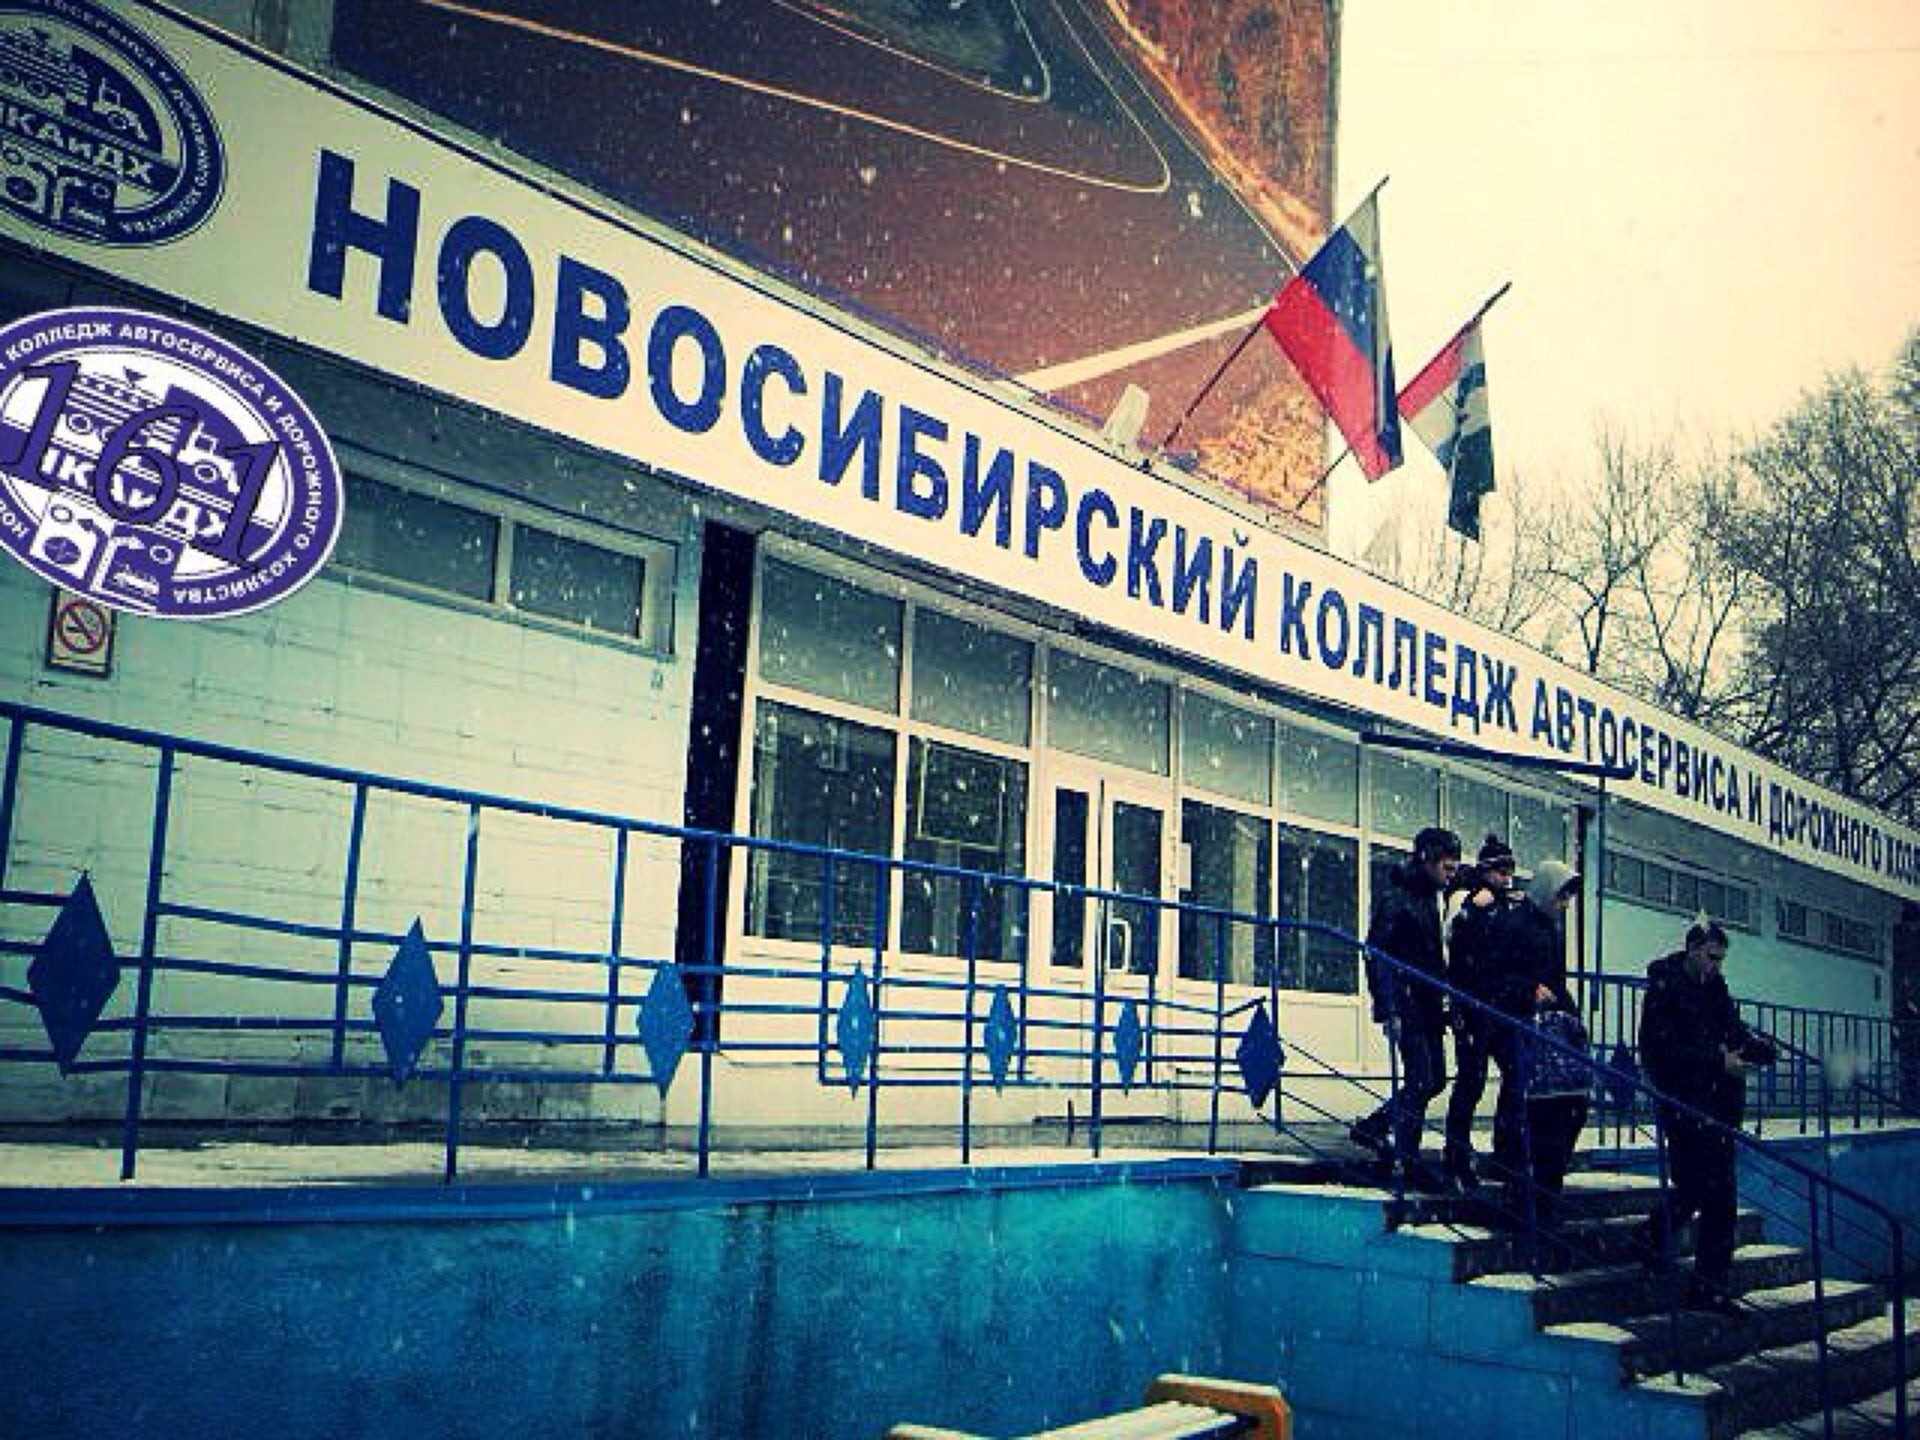 Колледжи в Кировском районе, 18 образовательных учреждений, 204 отзыва, фото, рейтинг средних учебных заведений – Новосибирск – Zoon.ru